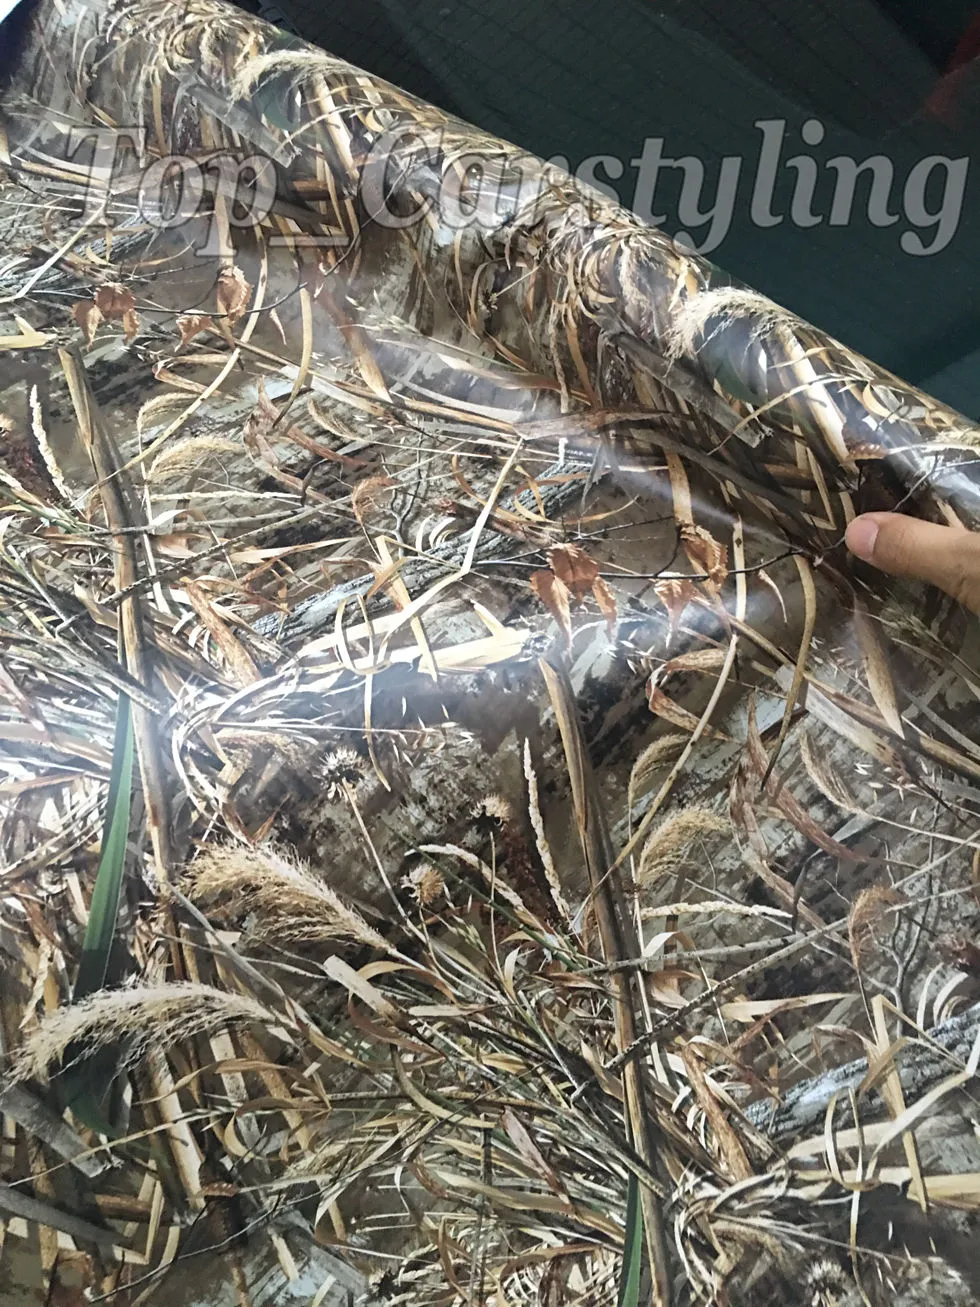 Realtree Camo Vinyle Wrap Feuille d'herbe camouflage Mossy Oak Film d'enveloppe de voiture Film pour véhicule style de peau couvrant autocollants 7705437